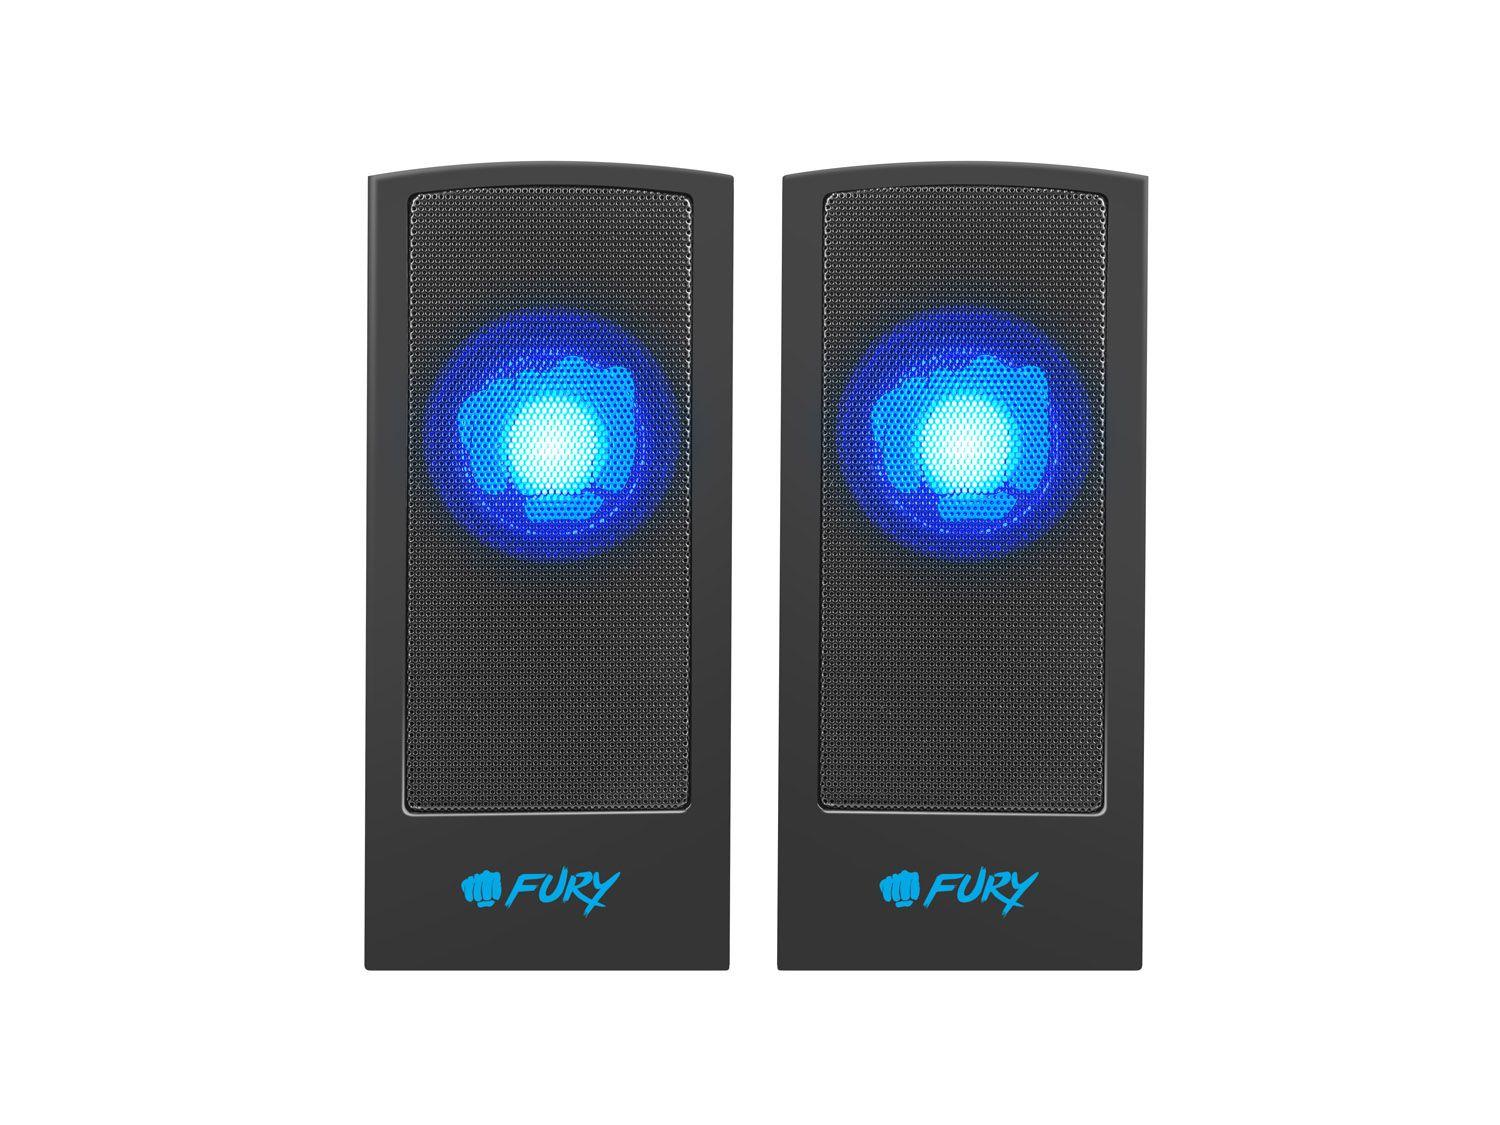 Zestaw głośników komputerowe NATEC Fury Skyray NFU-1309 (2.0; kolor czarny)